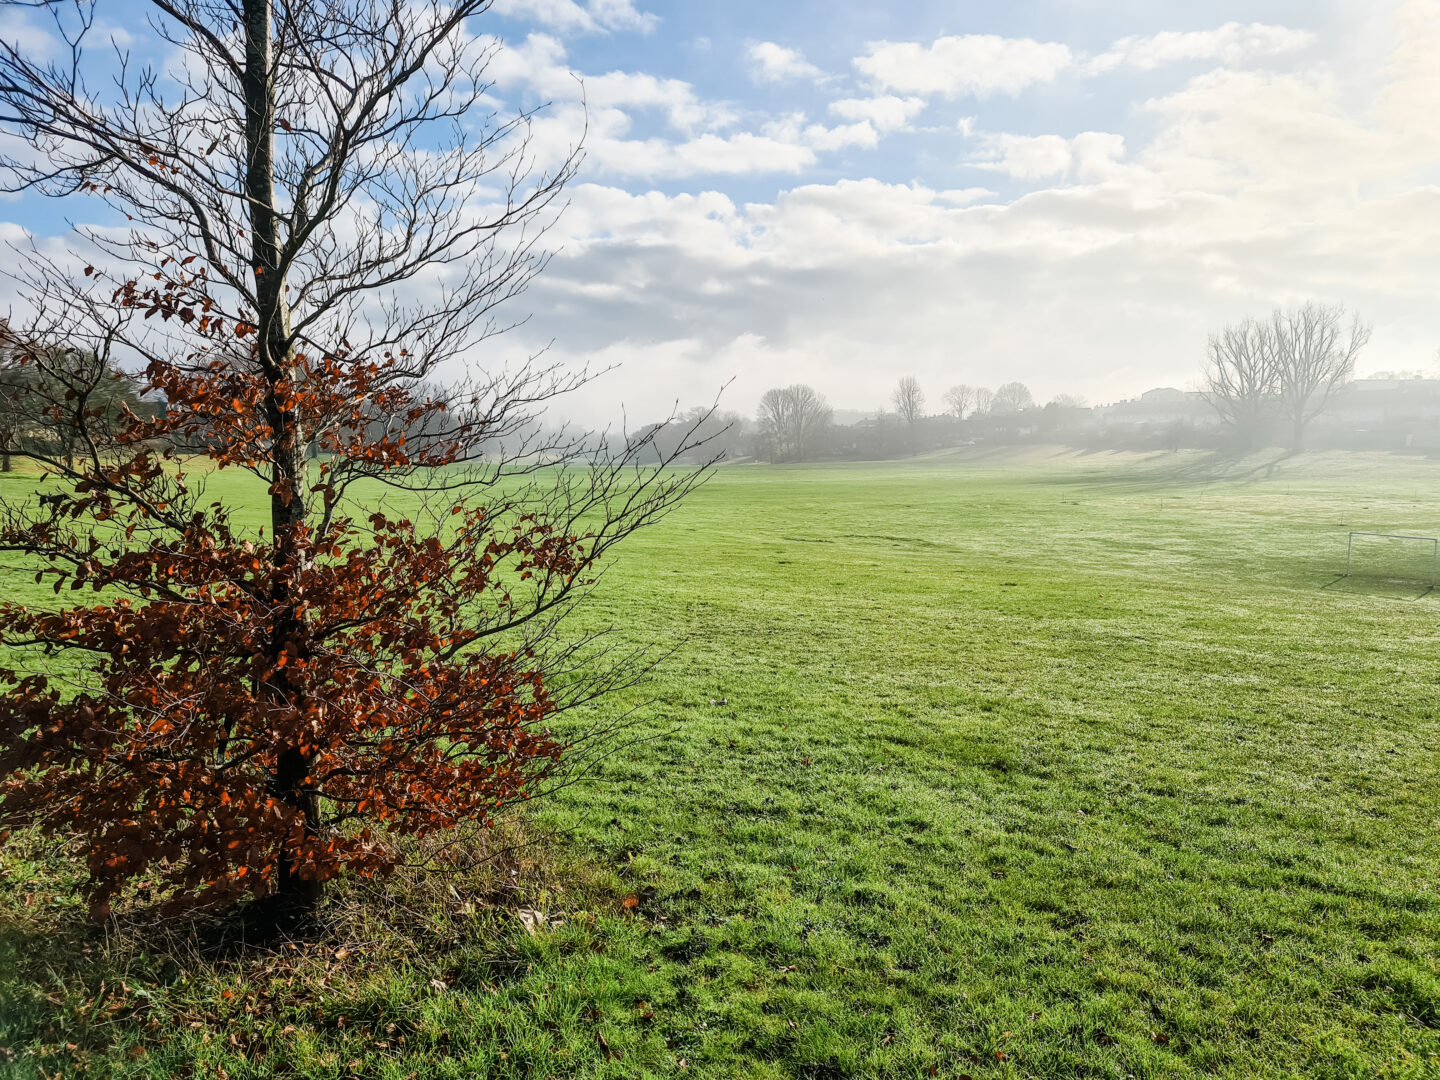 Winter scene - green field with mist 